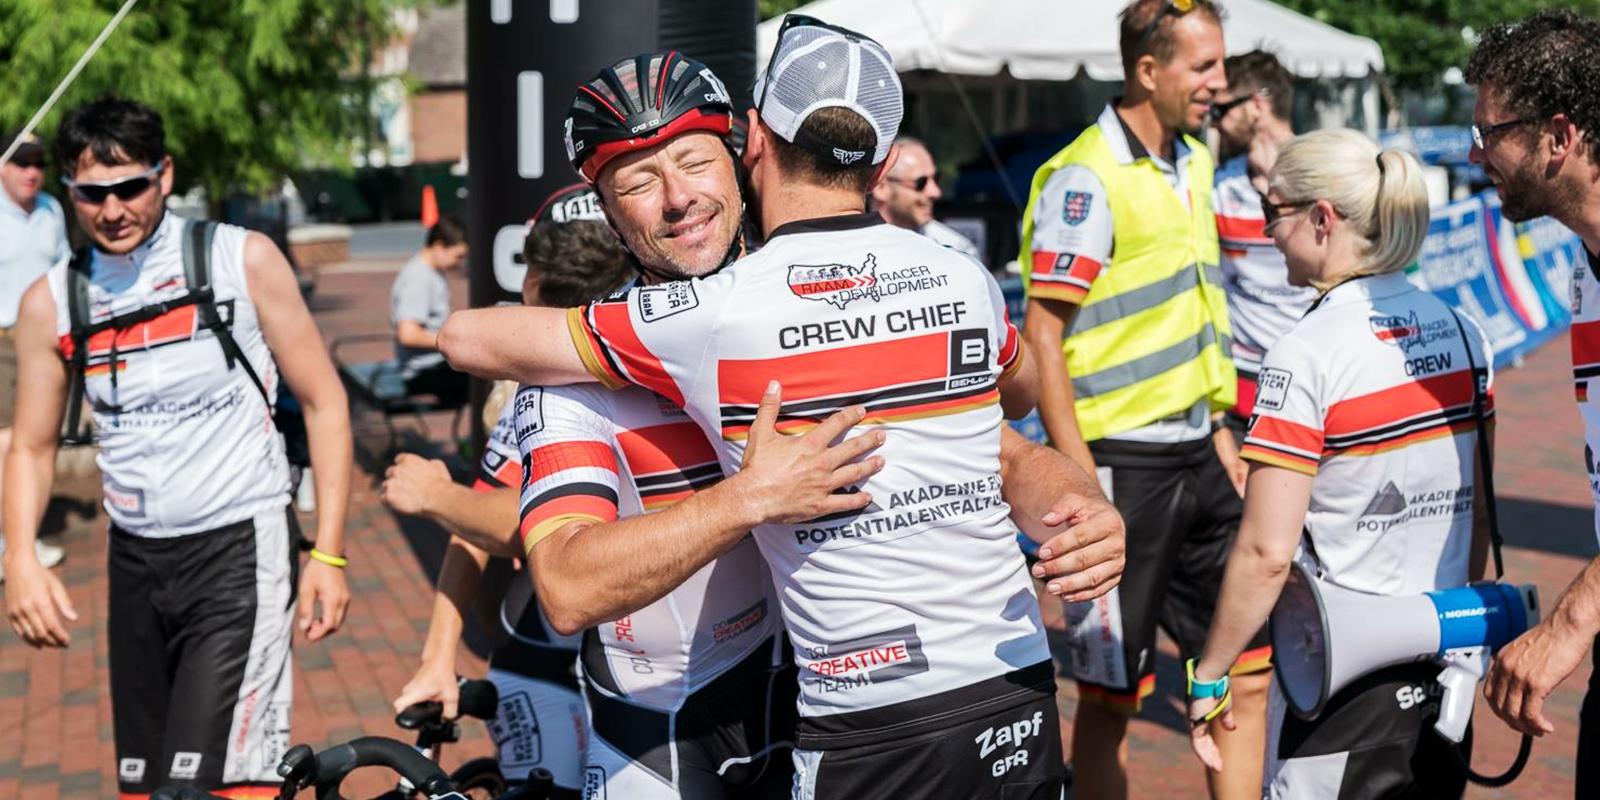 Sven Ole Müller umarmt einen Teamkollegen nach einem Rennen